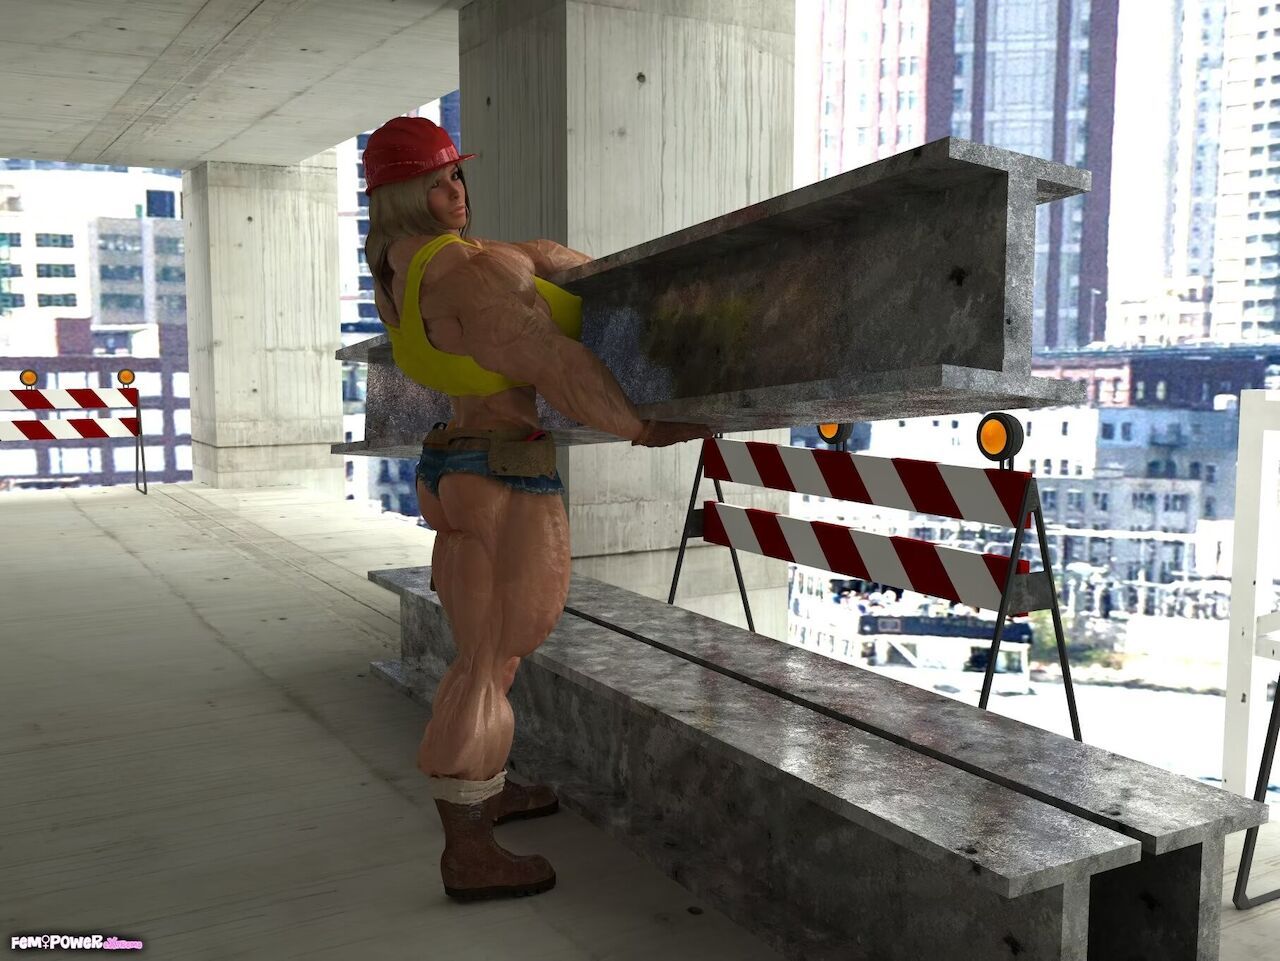 [FemPowerExtreme] Construction Worker Lisa 4